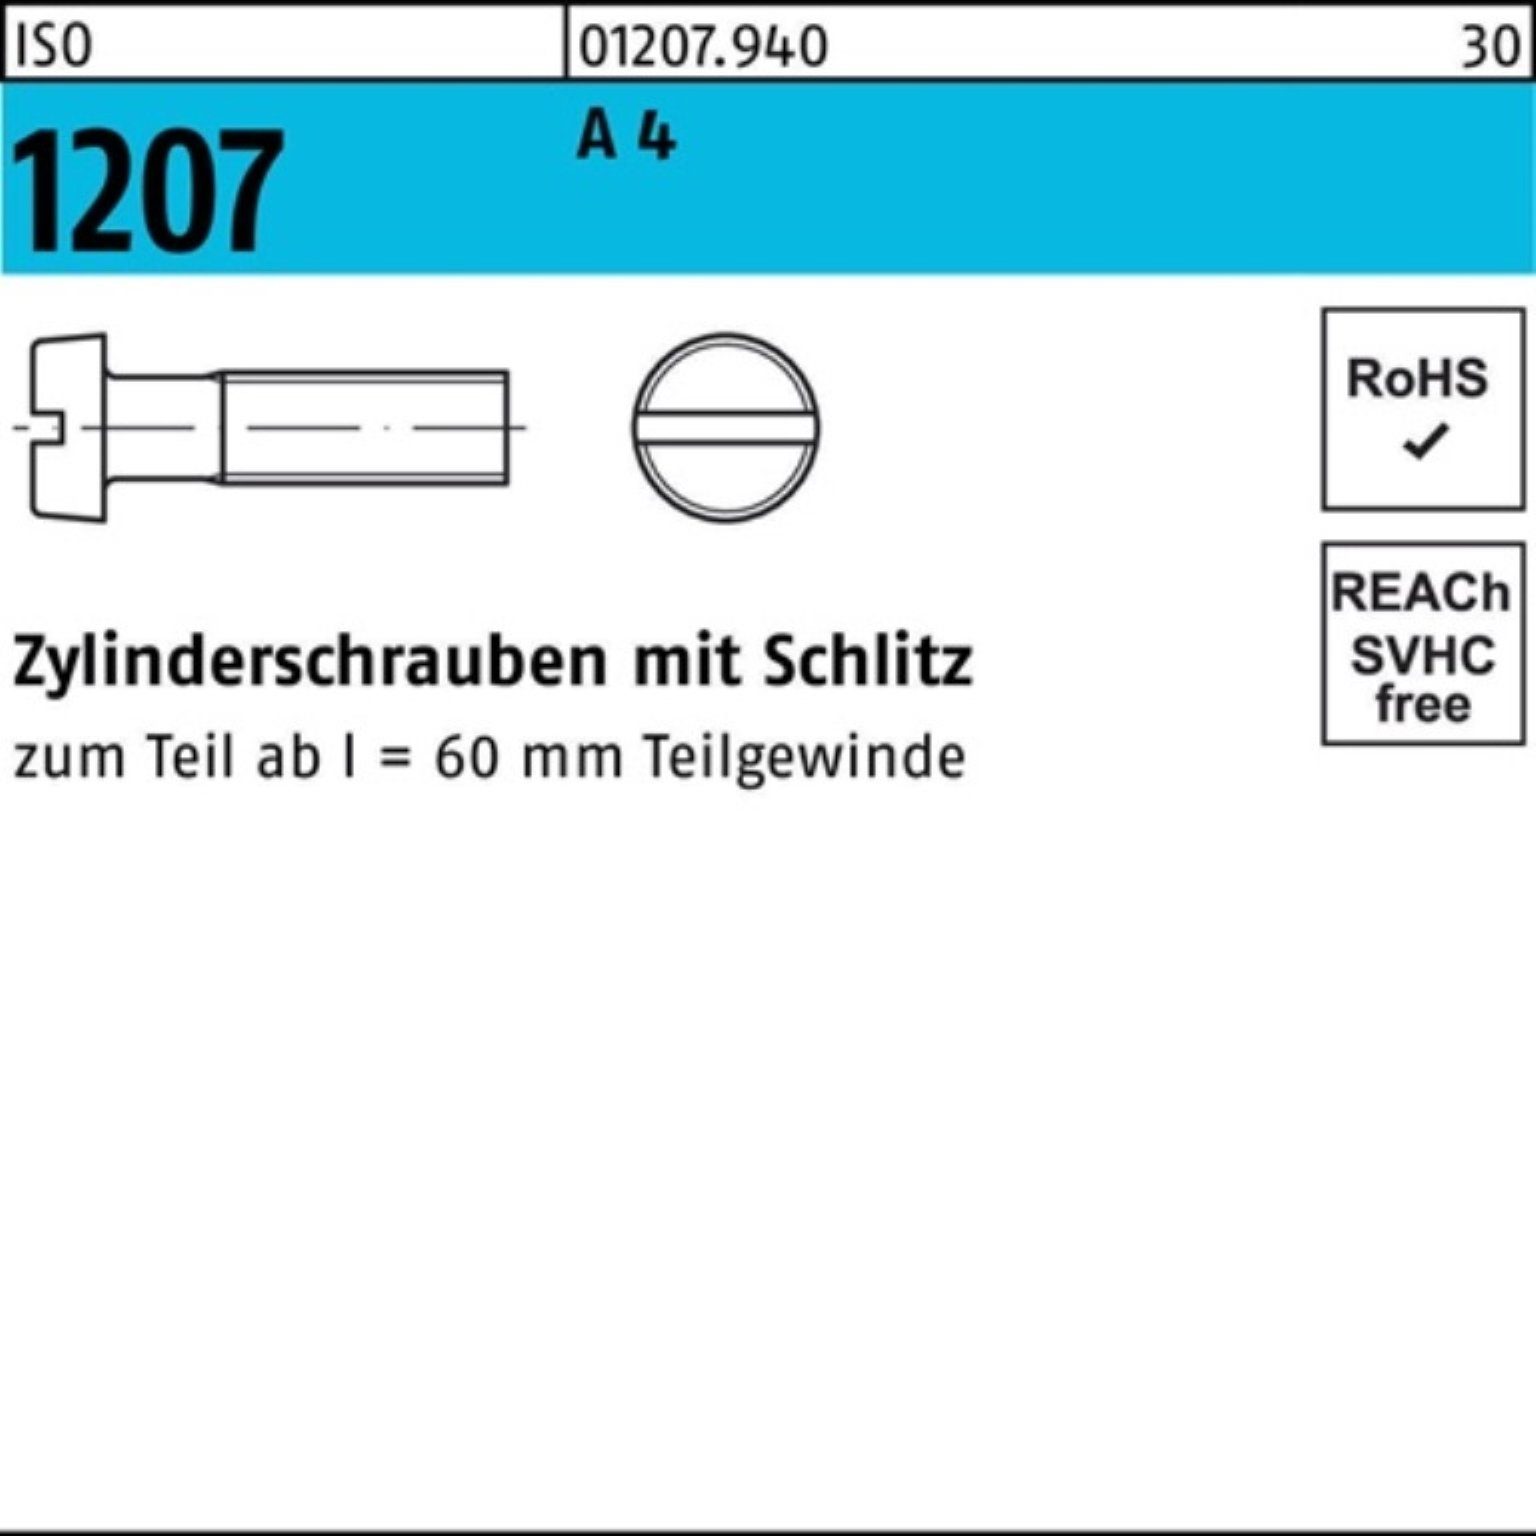 A M2x Schlitz Reyher 4 1000 1000er 1207 Pack 20 I ISO Zylinderschraube Stück Zylinderschraube